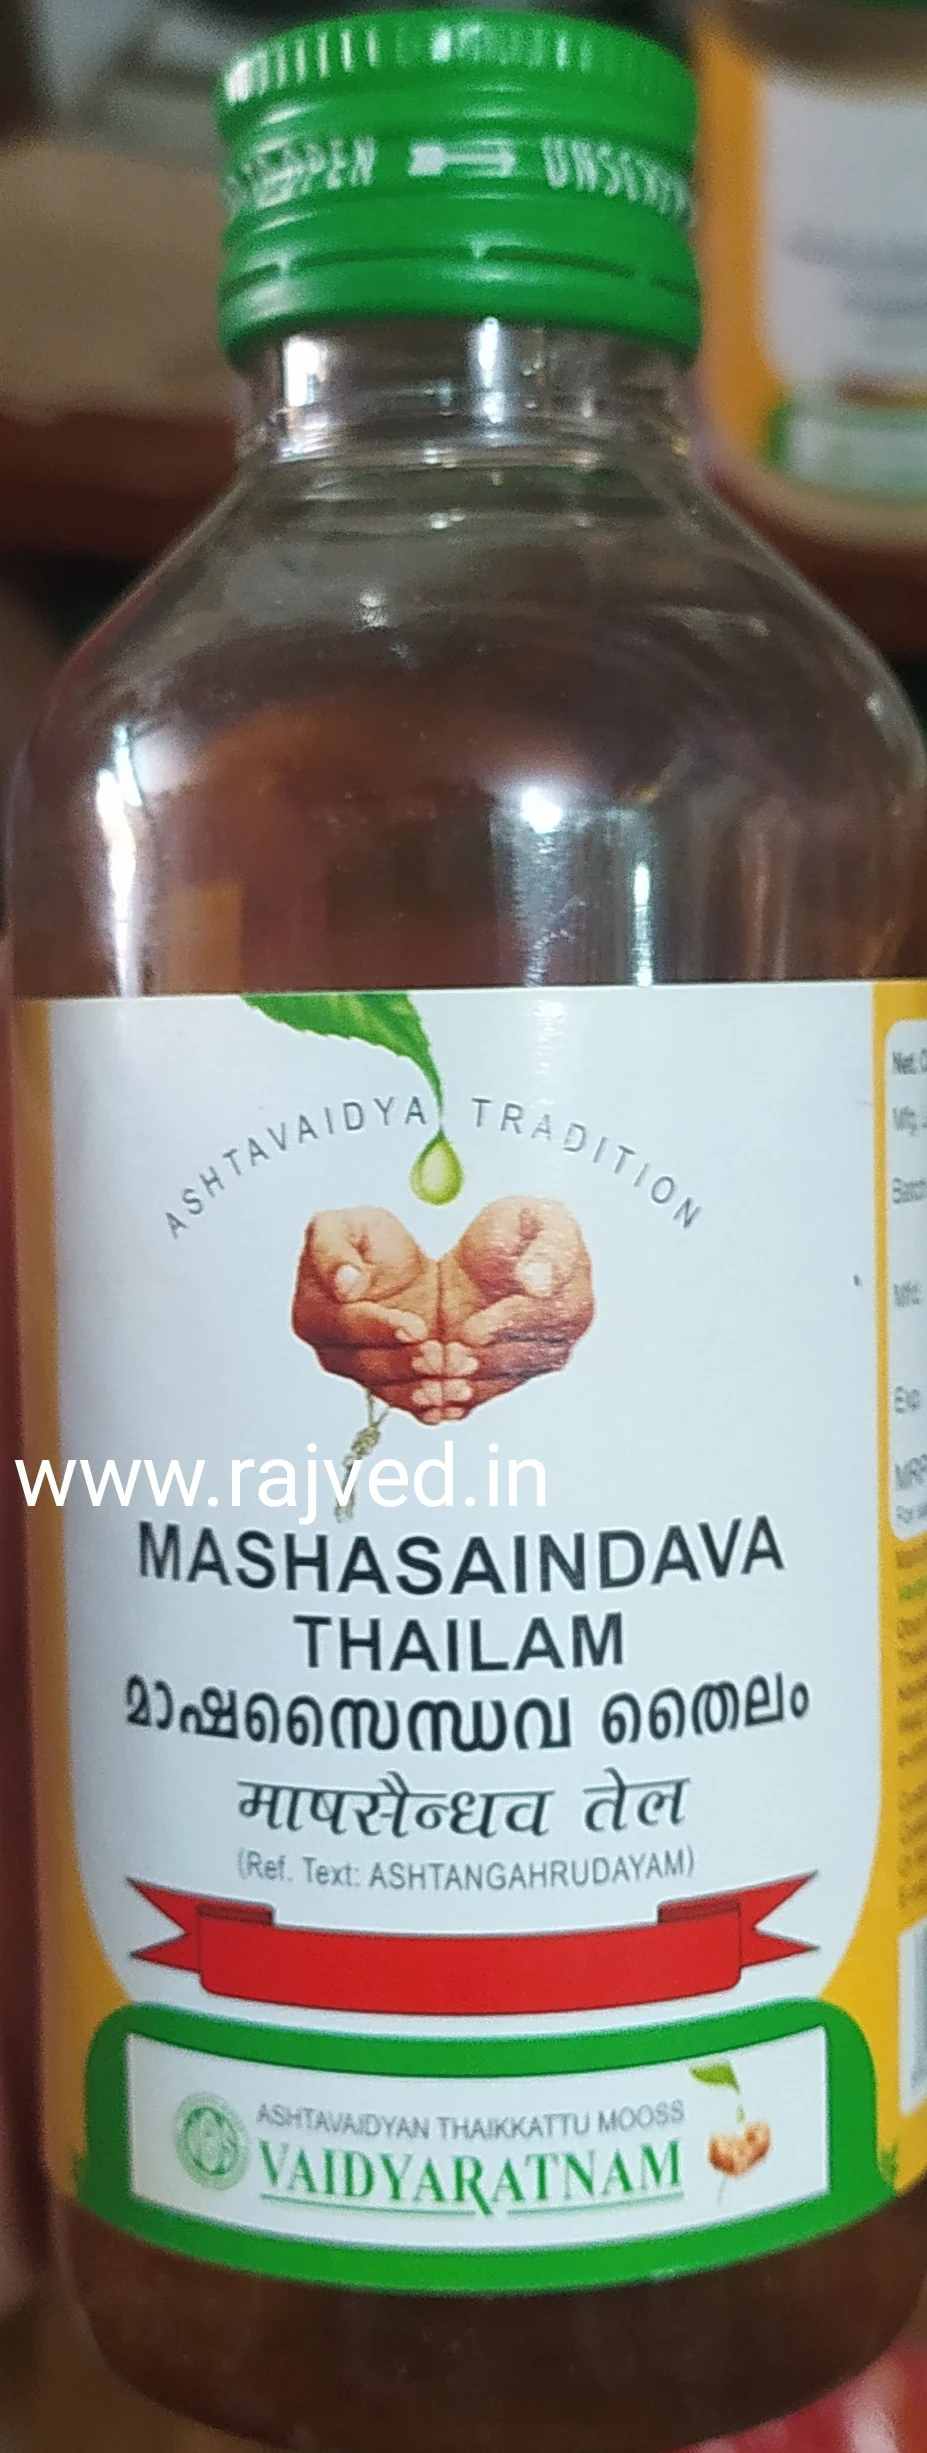 mashasaindava thailam 200 ml vaidyaratnam oushadhalaya